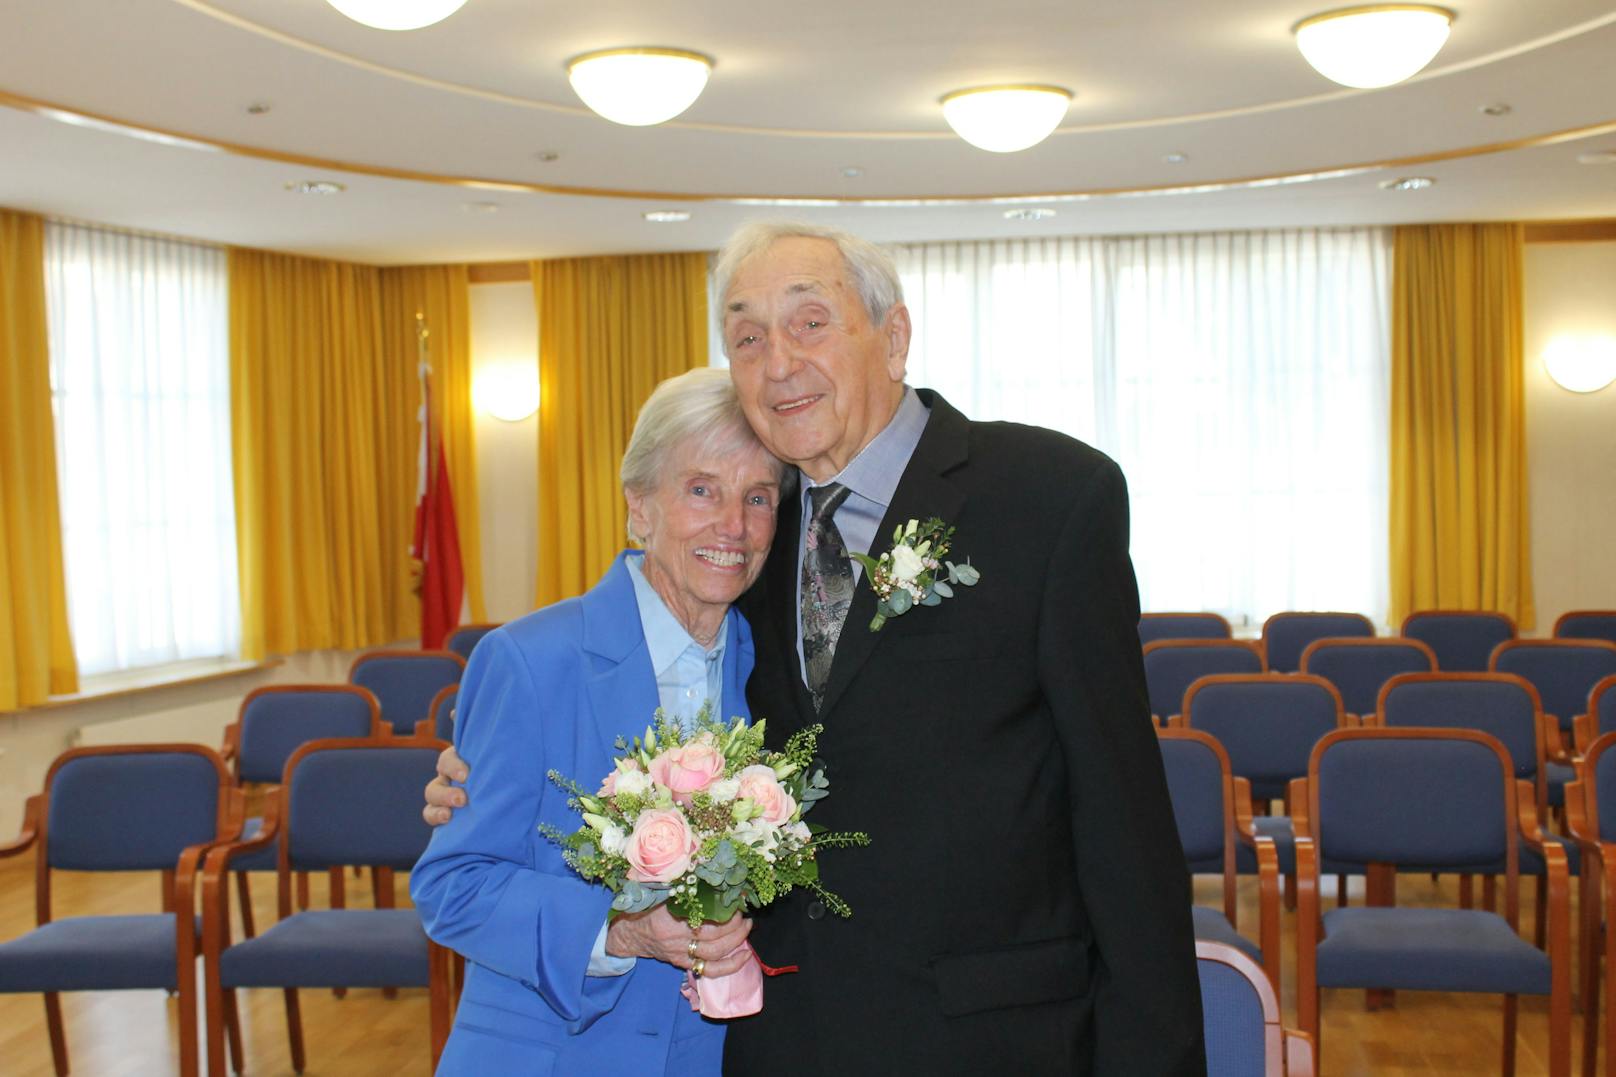 Silvia und Herbert Hammerstorfer gaben sich nach 40 gemeinsamen Jahren das JA-Wort.